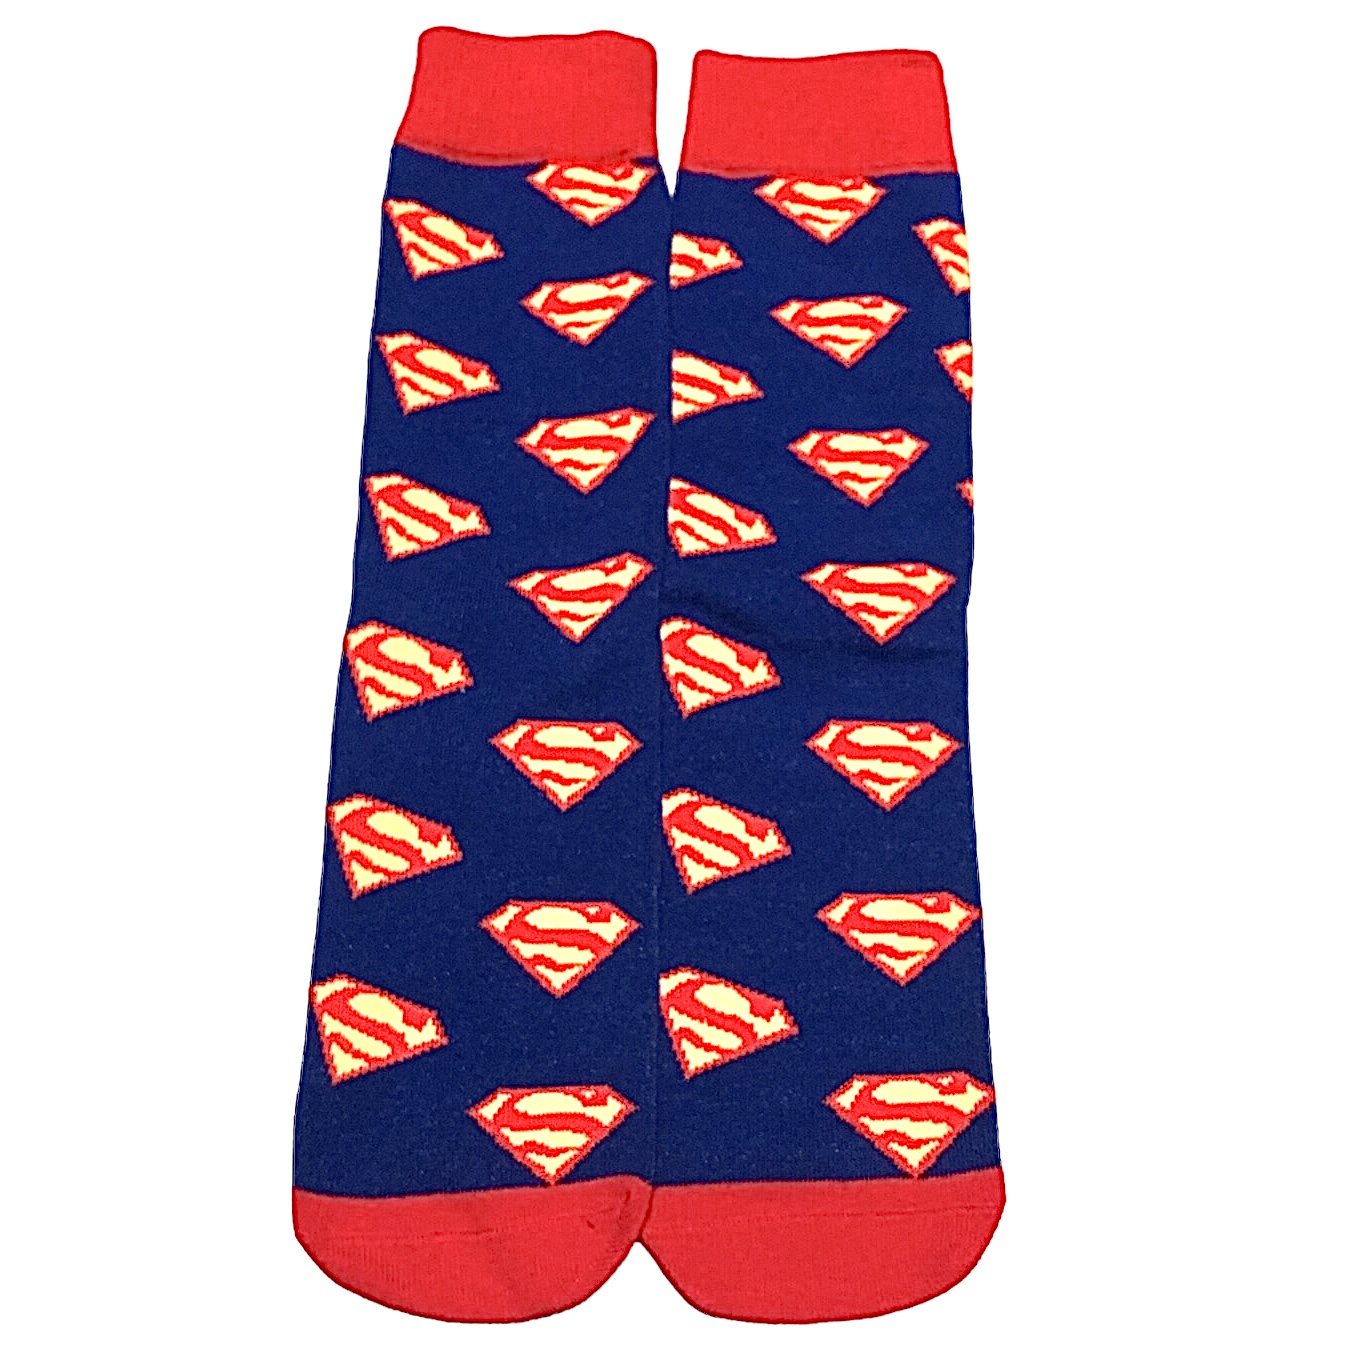 Superman Socken 39-46